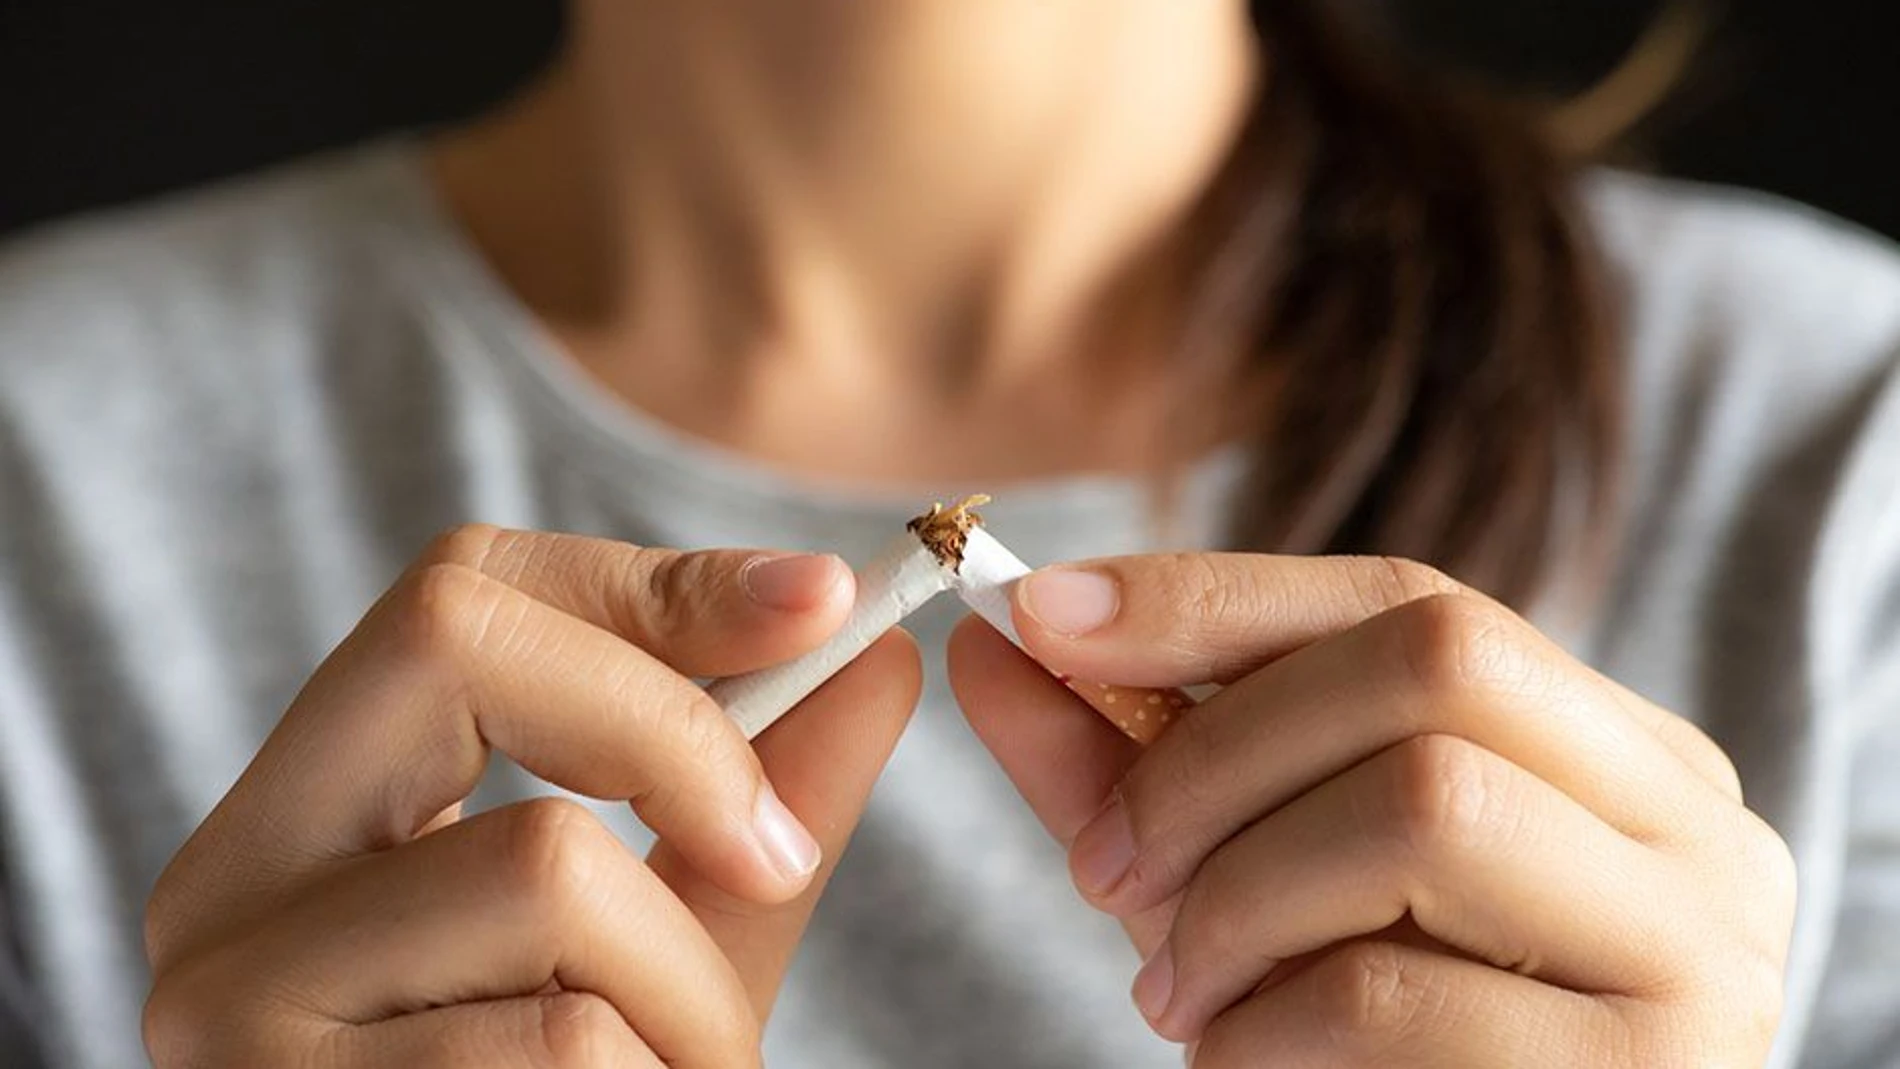 Llega el fármaco para dejar de fumar en 25 días - Diario Sanitario